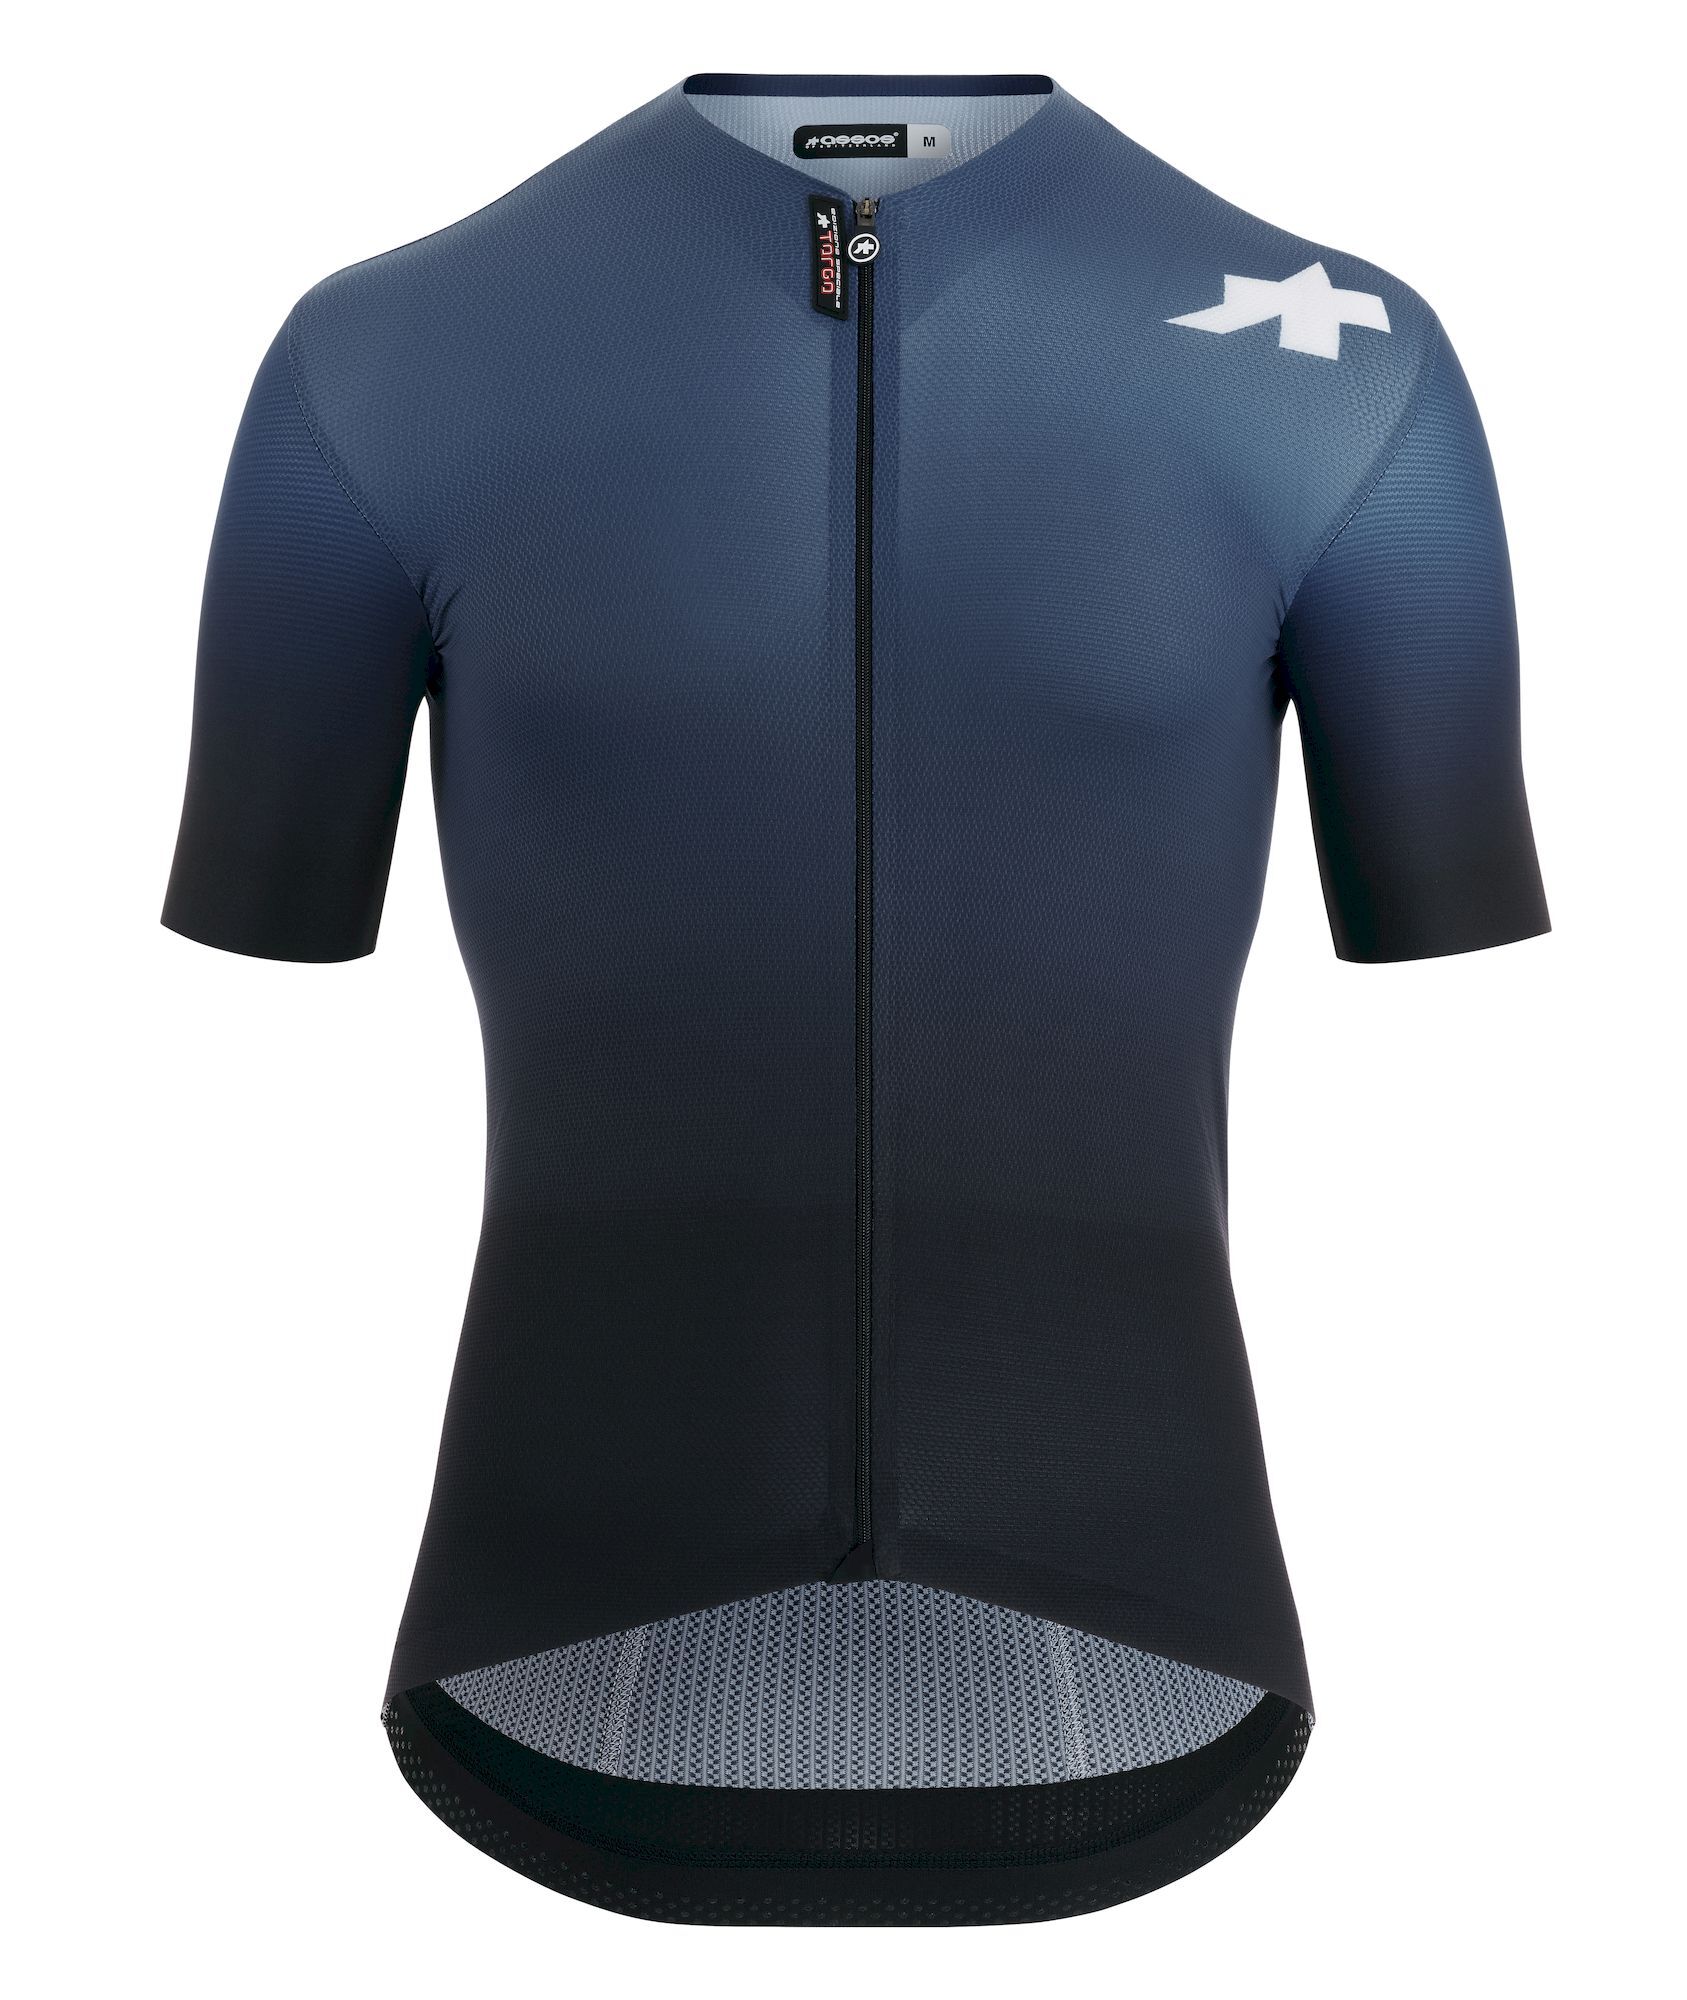 Assos Equipe RS S9 TARGA - Cycling jersey - Men's